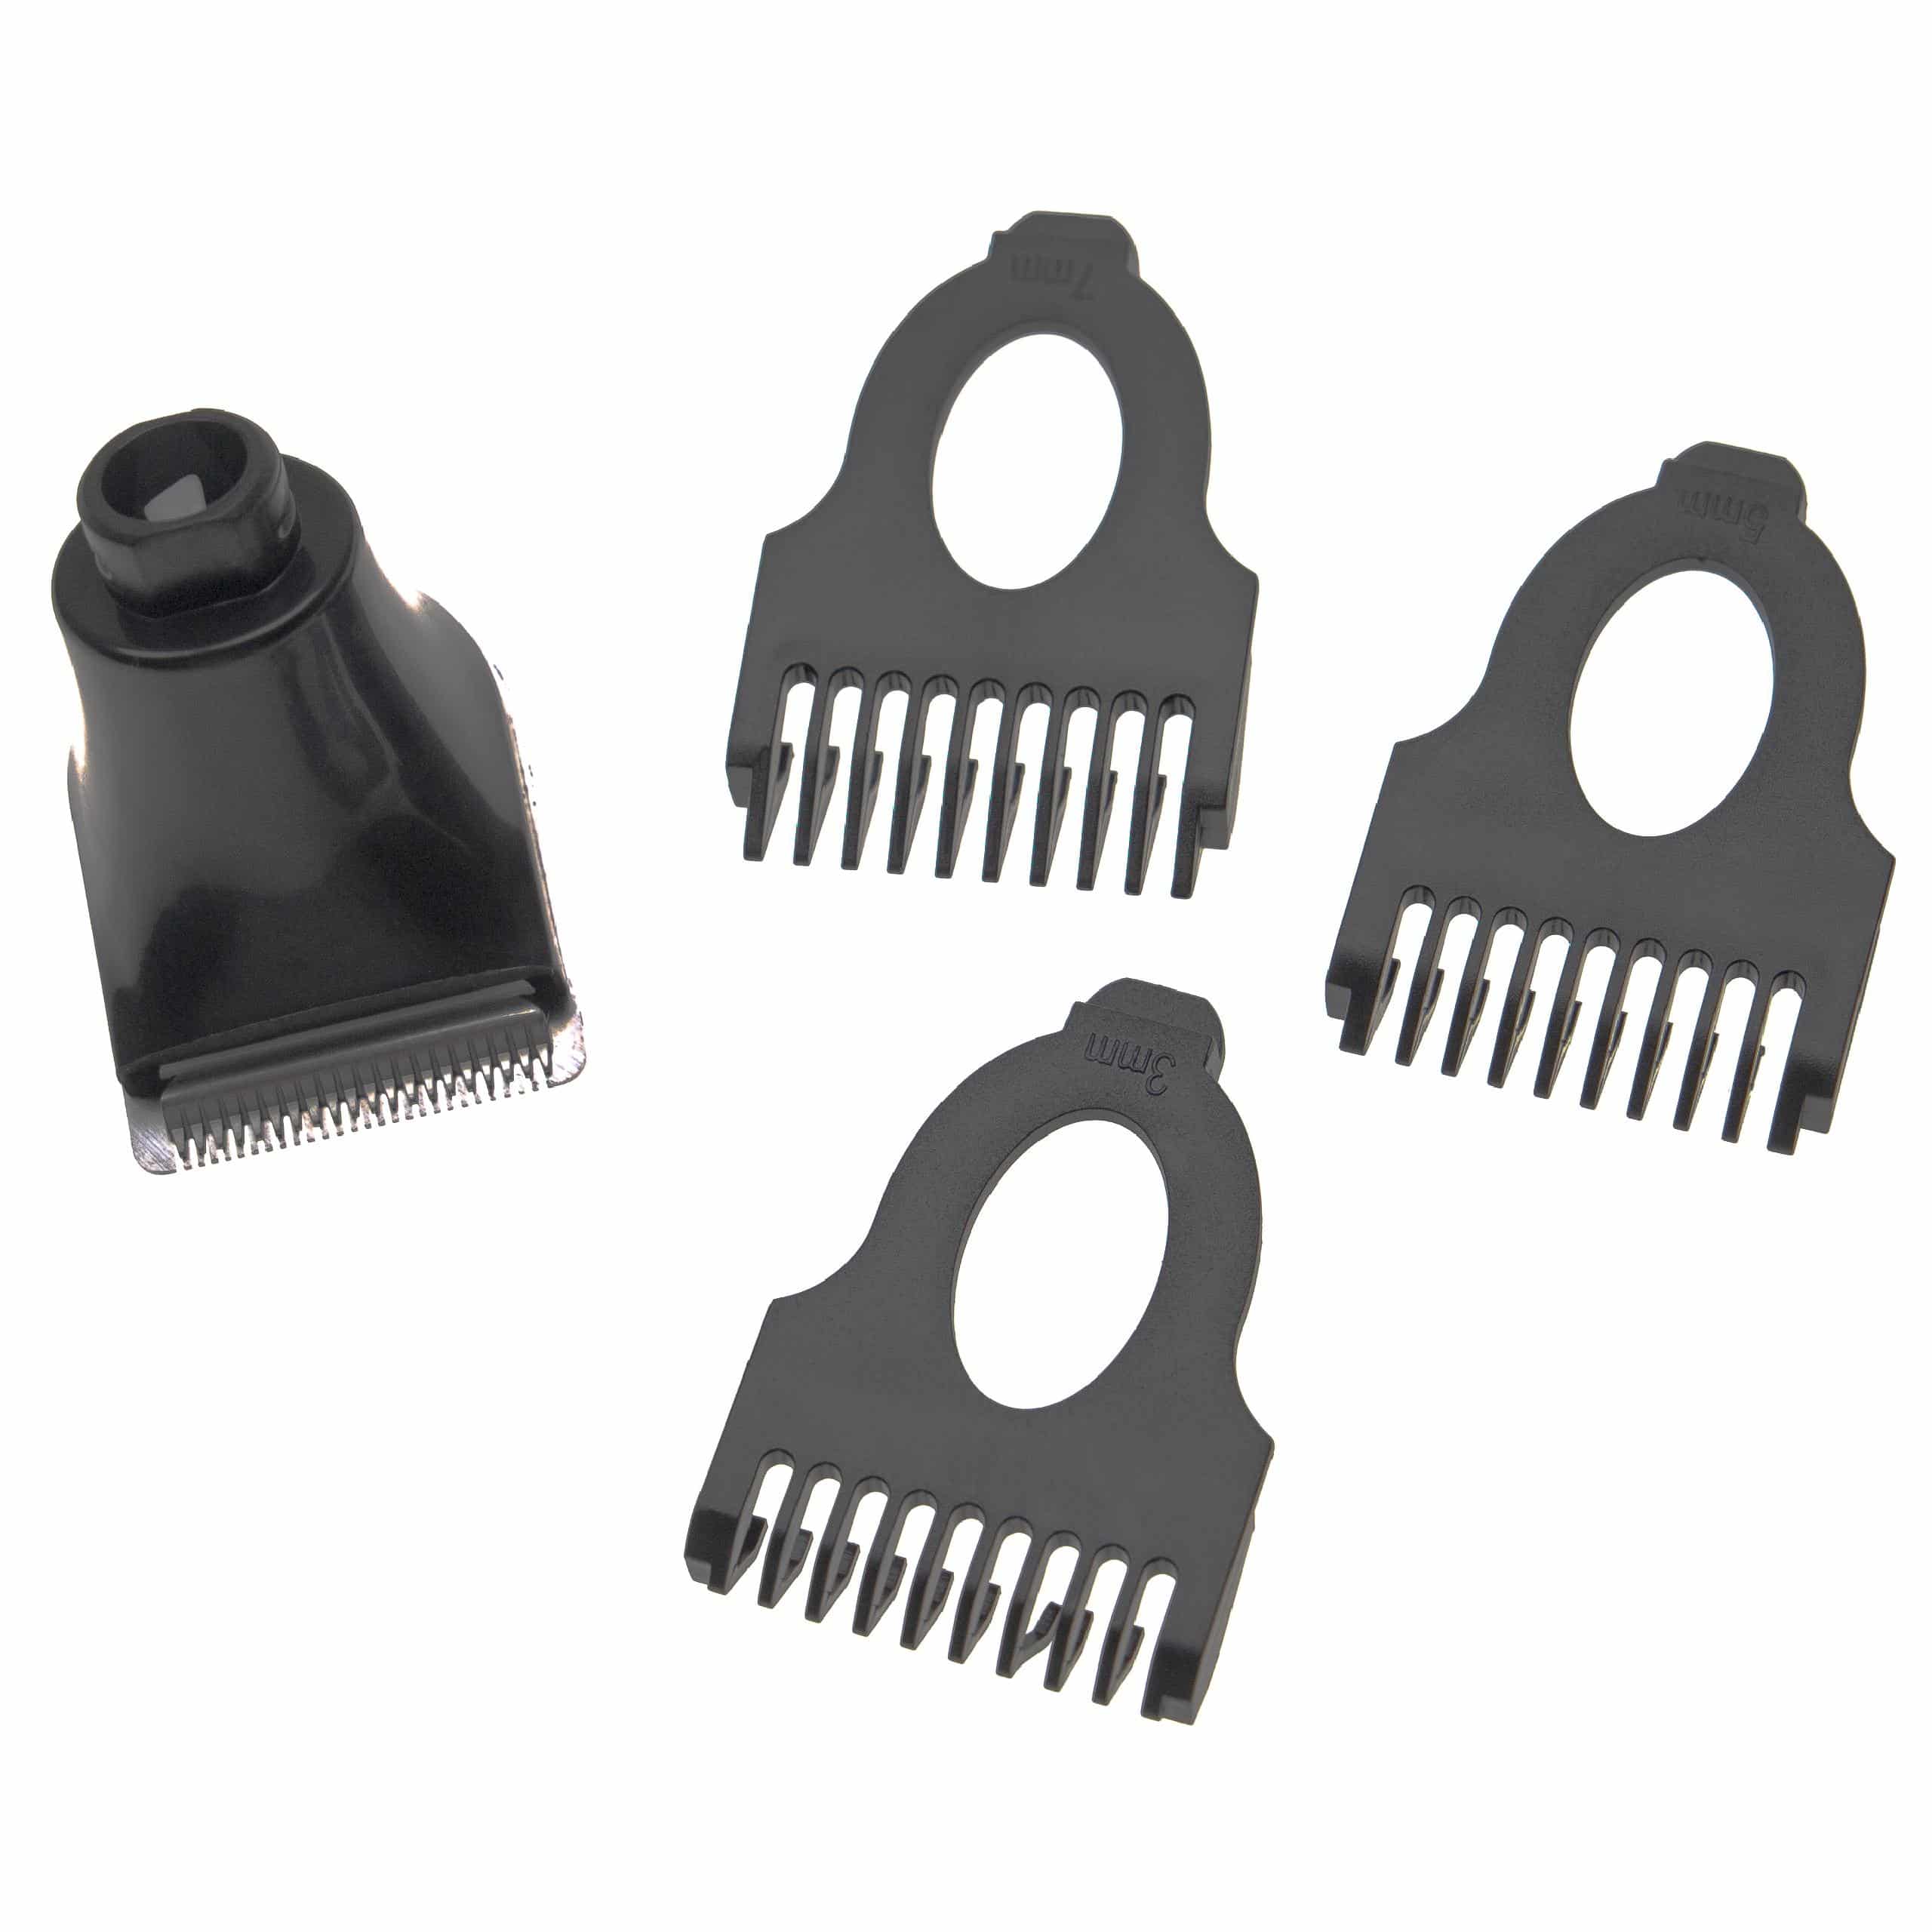 Accesorio de corte (set) para Philips Arcitec afeitadora, etc. - 4 uds. Kit con peine de barba 3 mm / 5 mm / 7